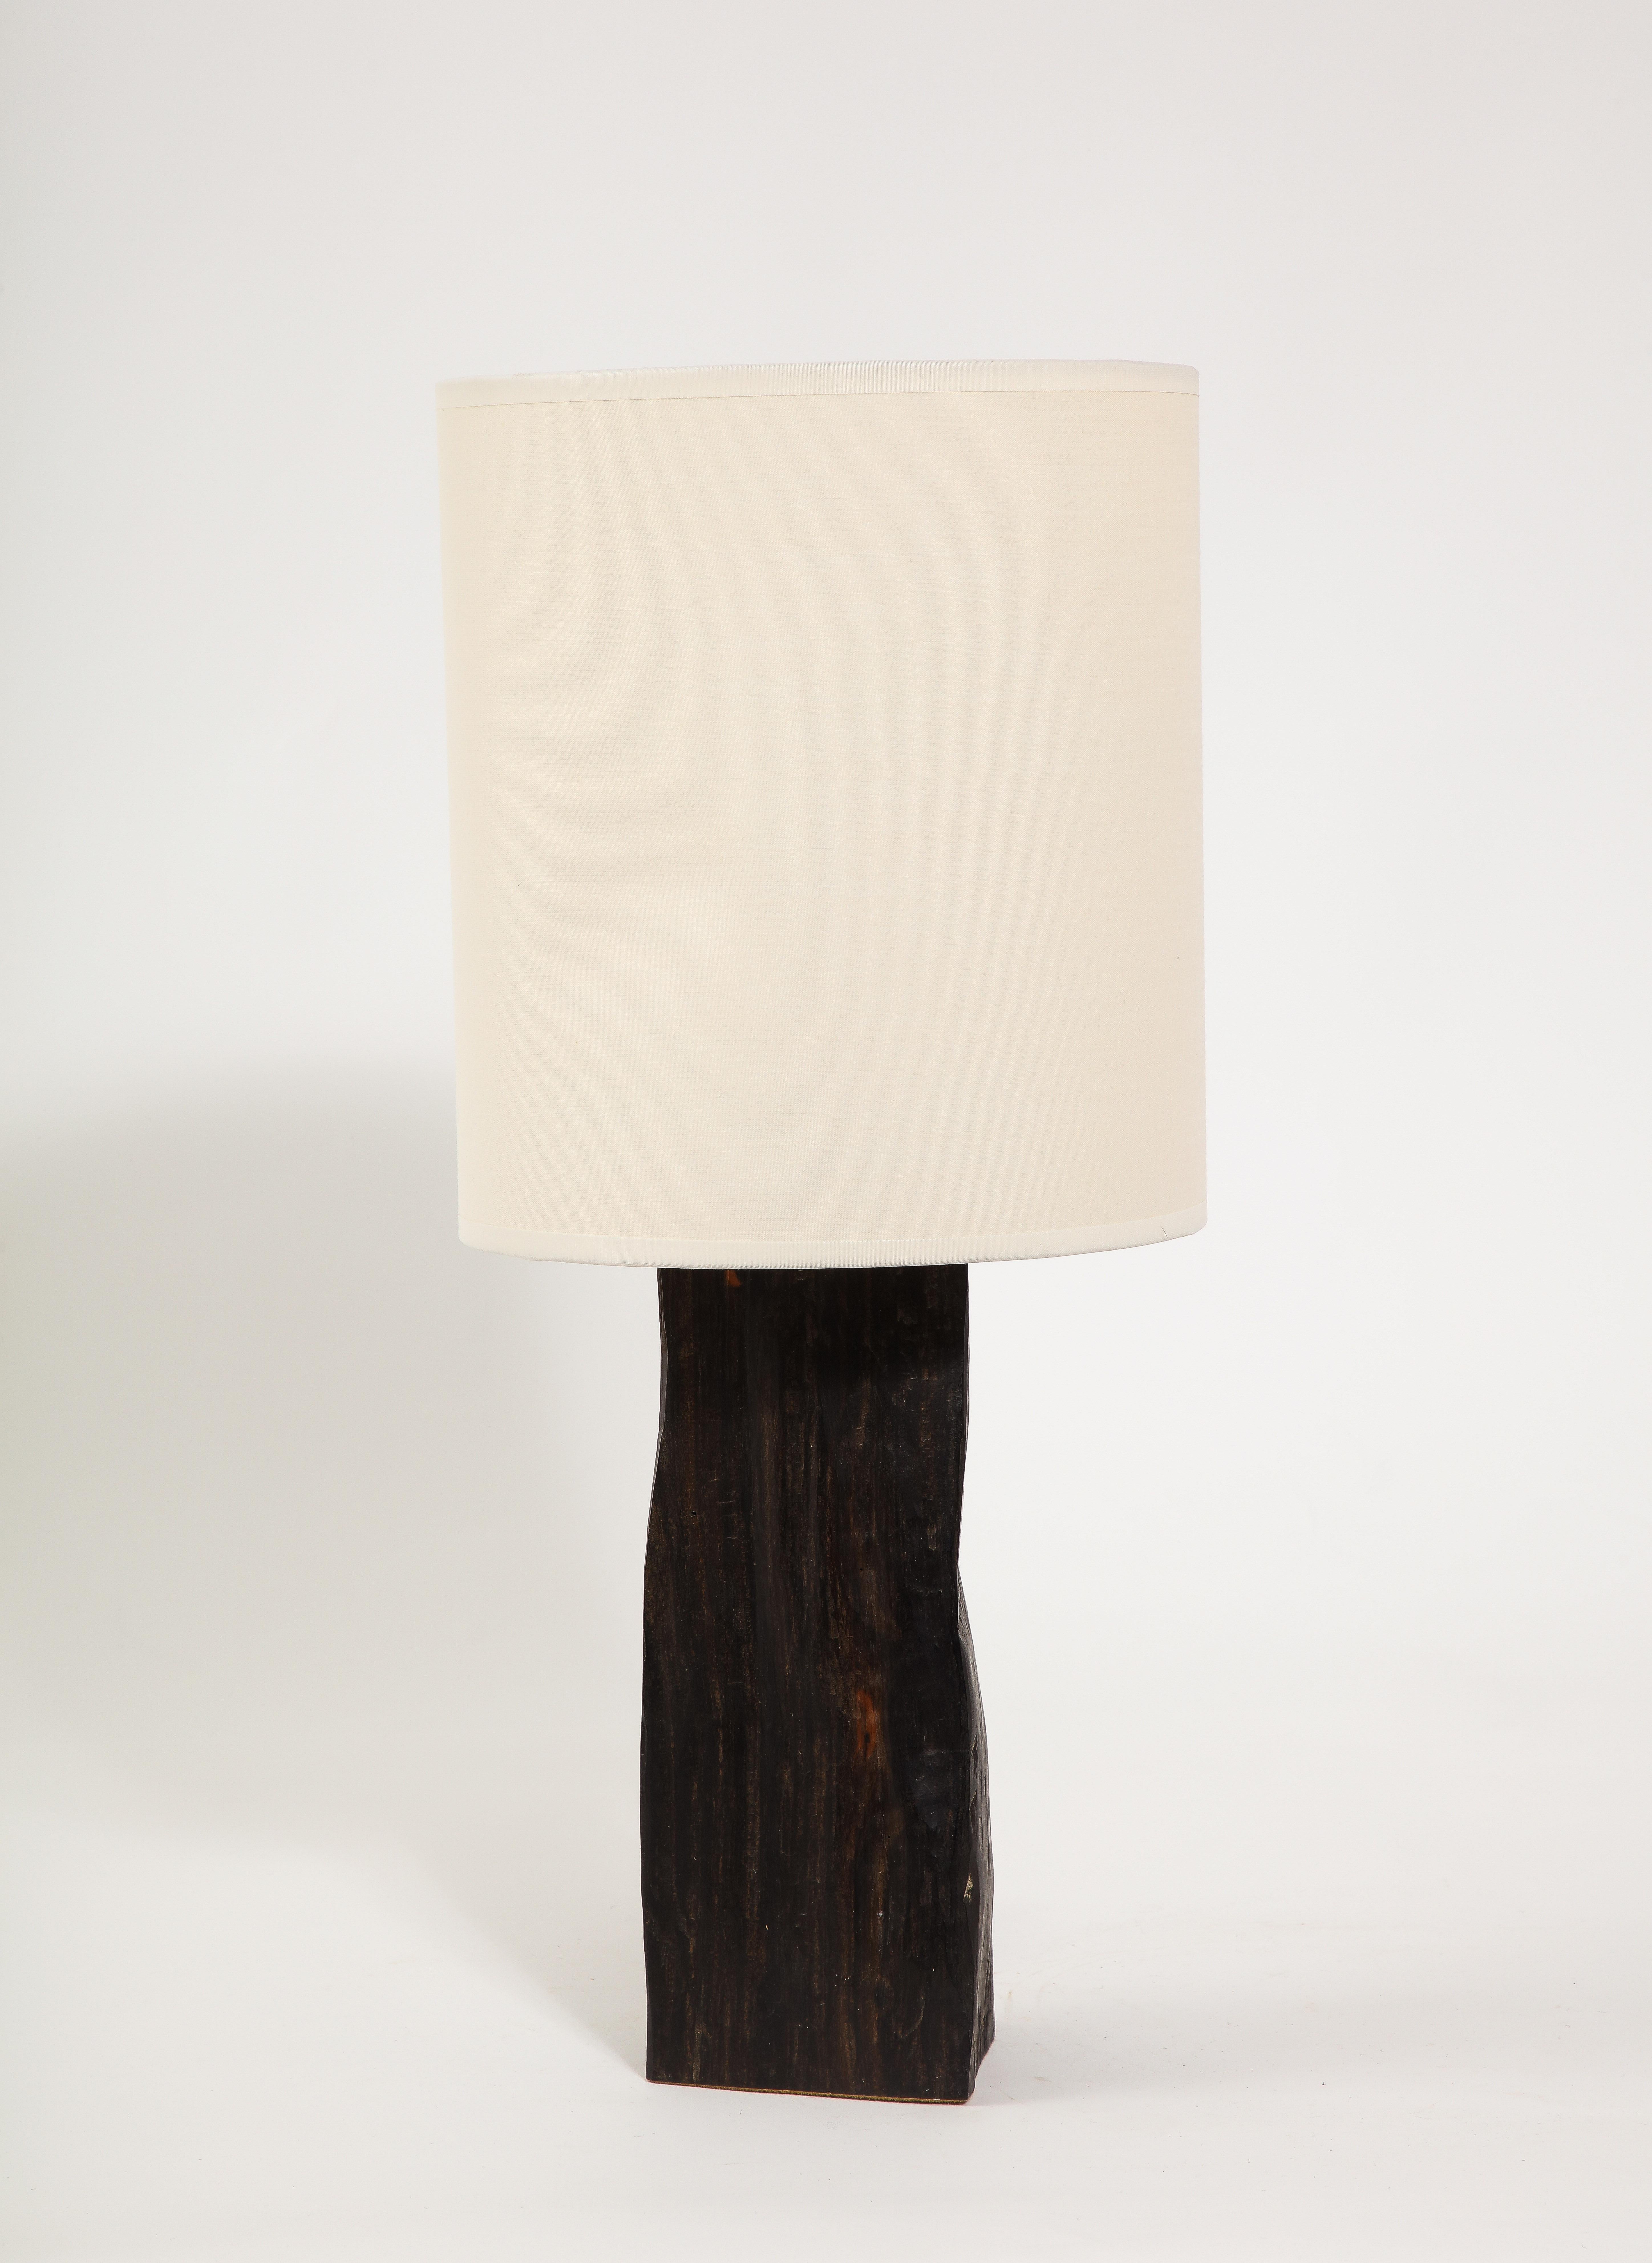 Lampe de table en ébène massif avec une finition polie à la main

11x5x4 Base seulement
